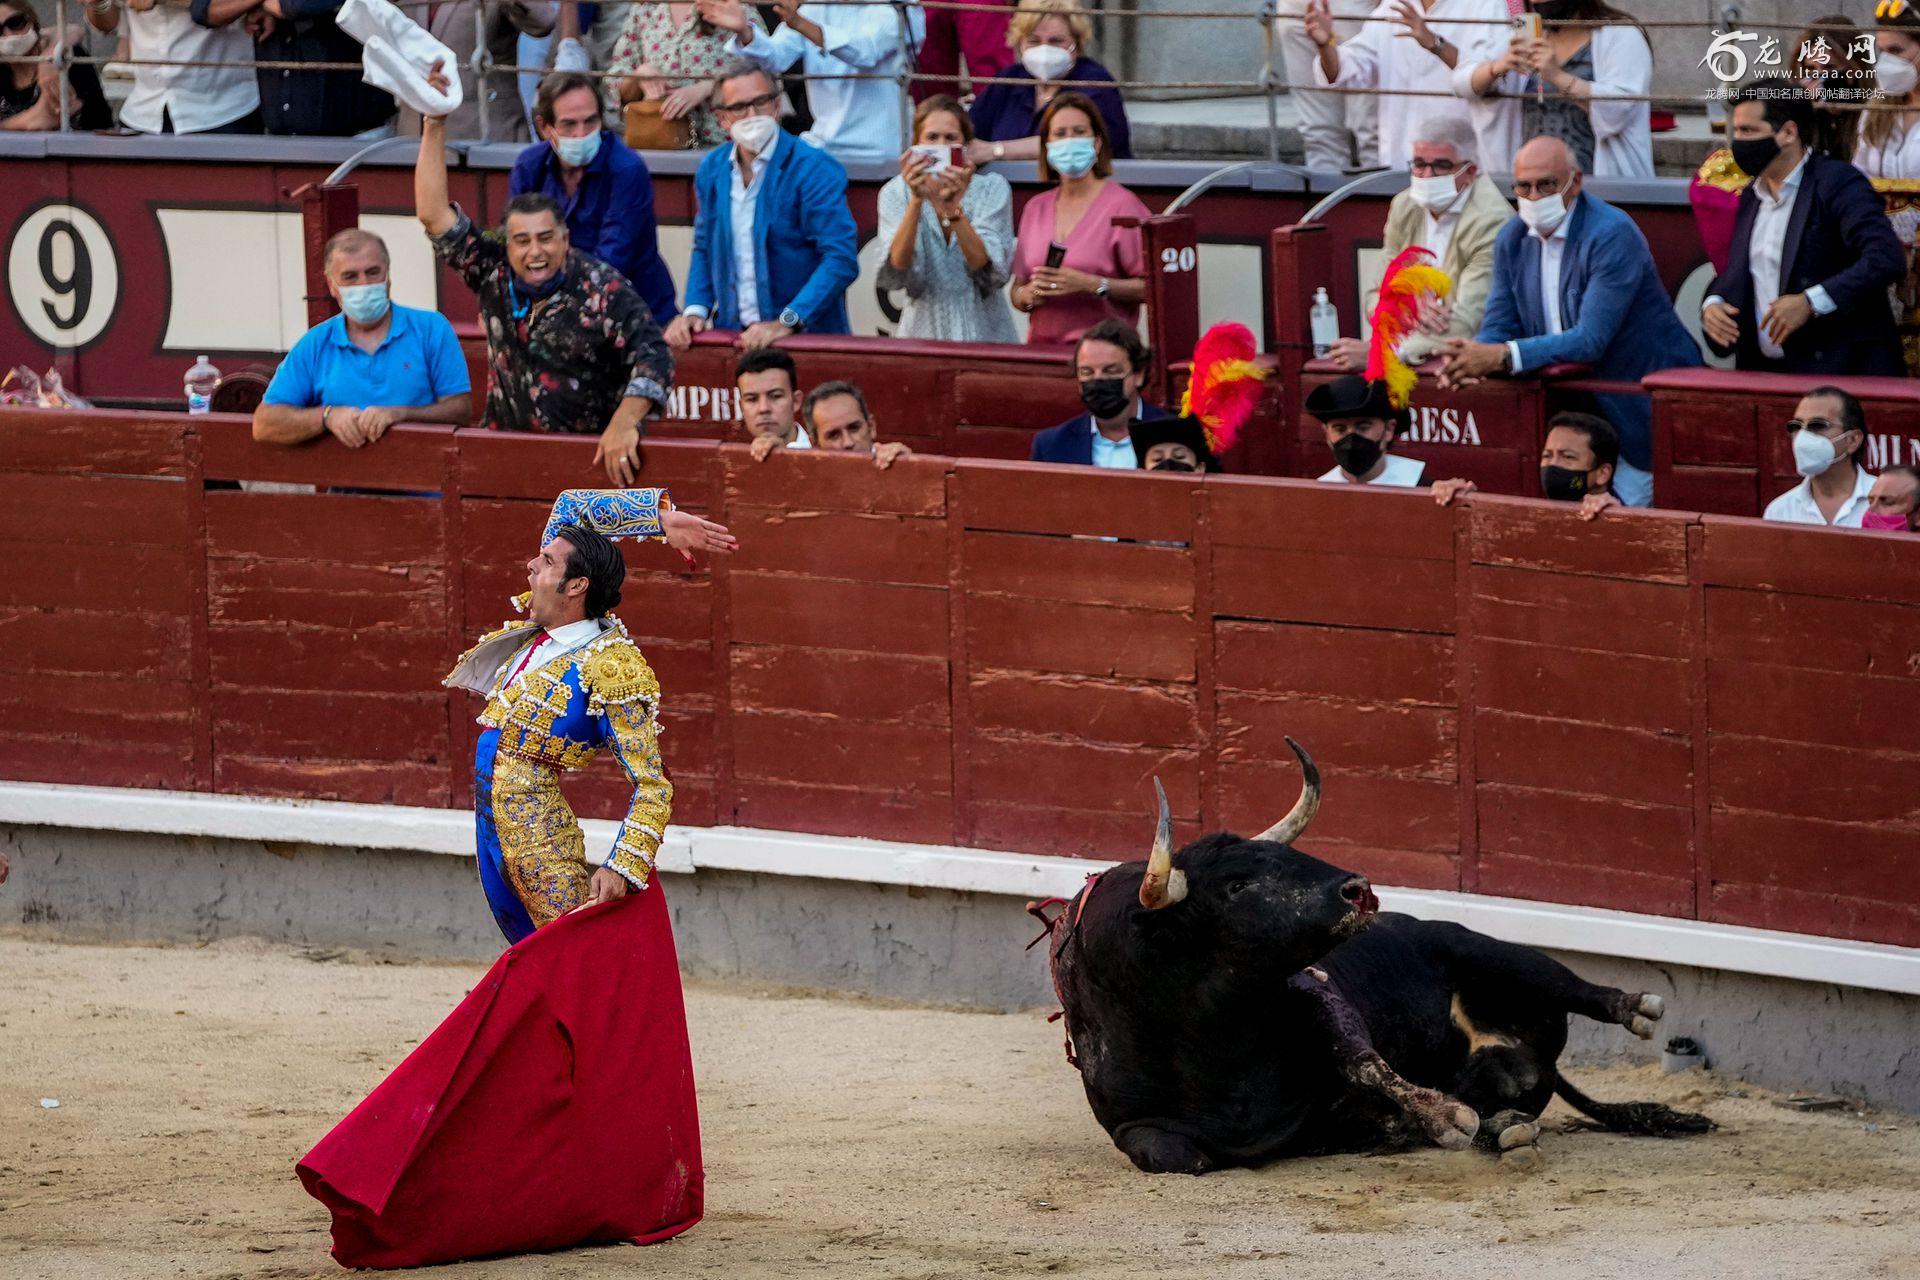 无法忘记的痛！西班牙斗牛士被牛顶的瞬间 | 探索网